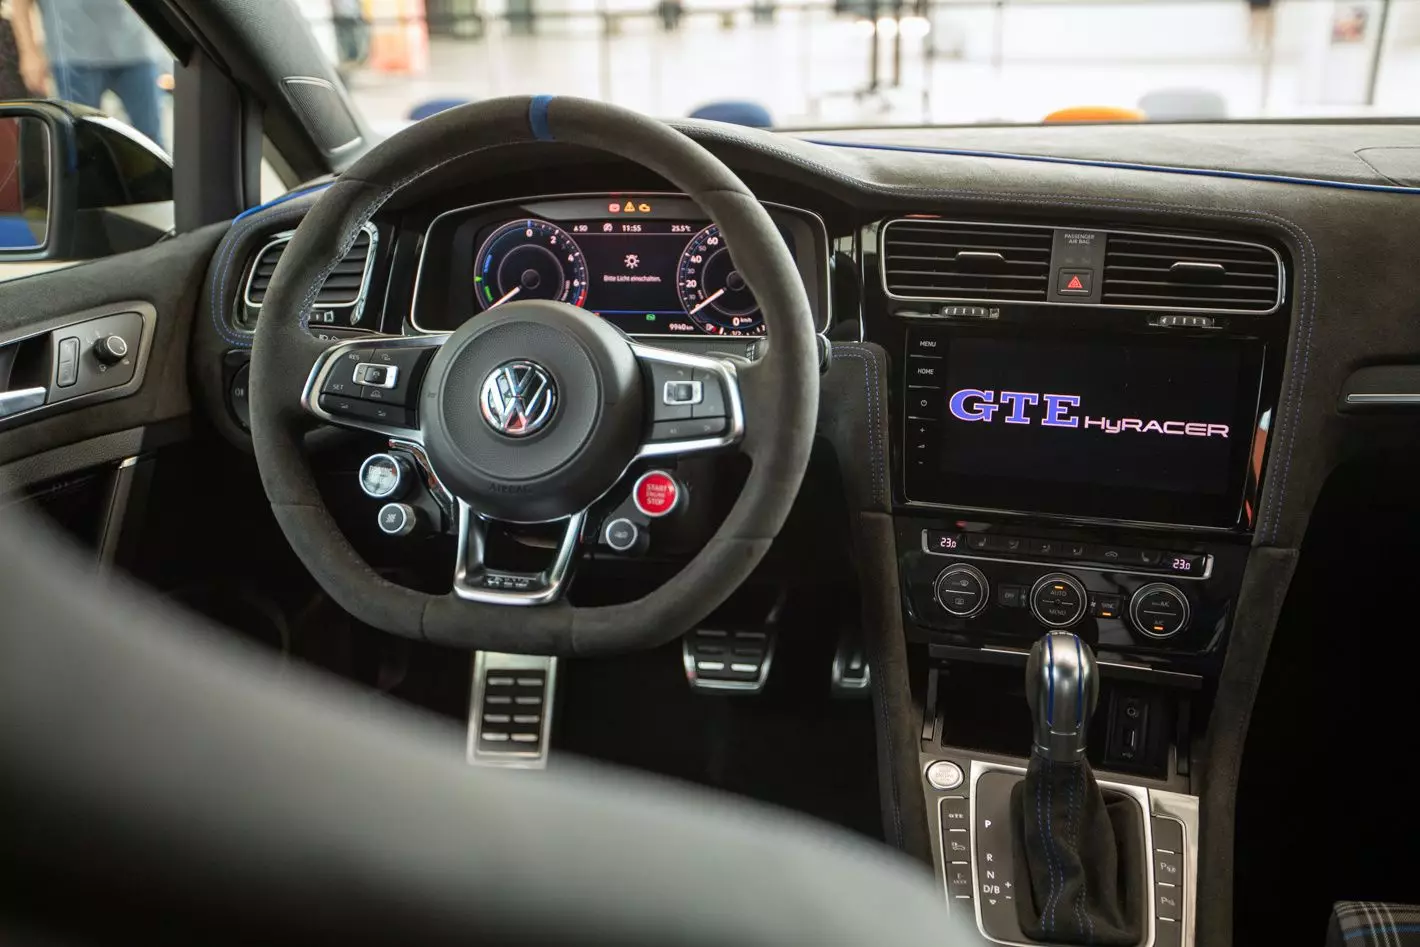 Volkswagen Golf GTE HyRacer 2020, Вертерзее